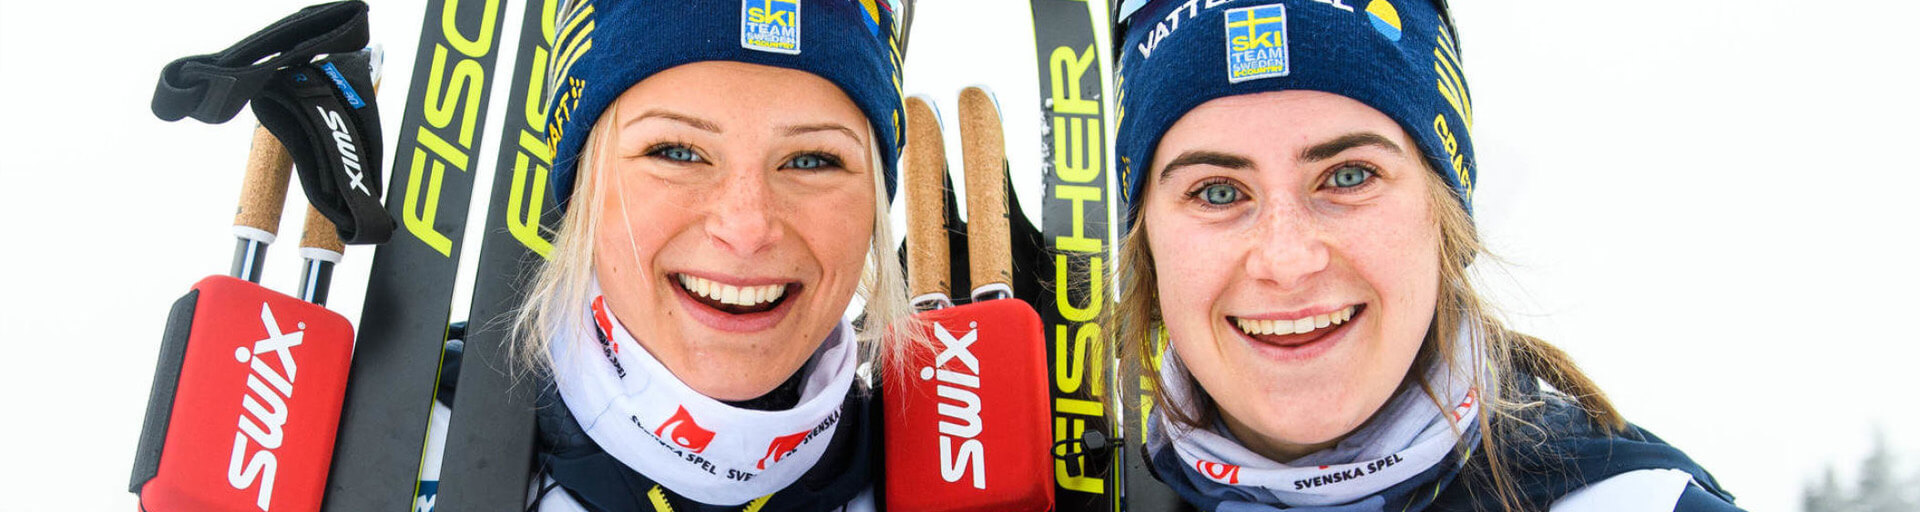 Скандинавы снялись с КМ по лыжным гонкам